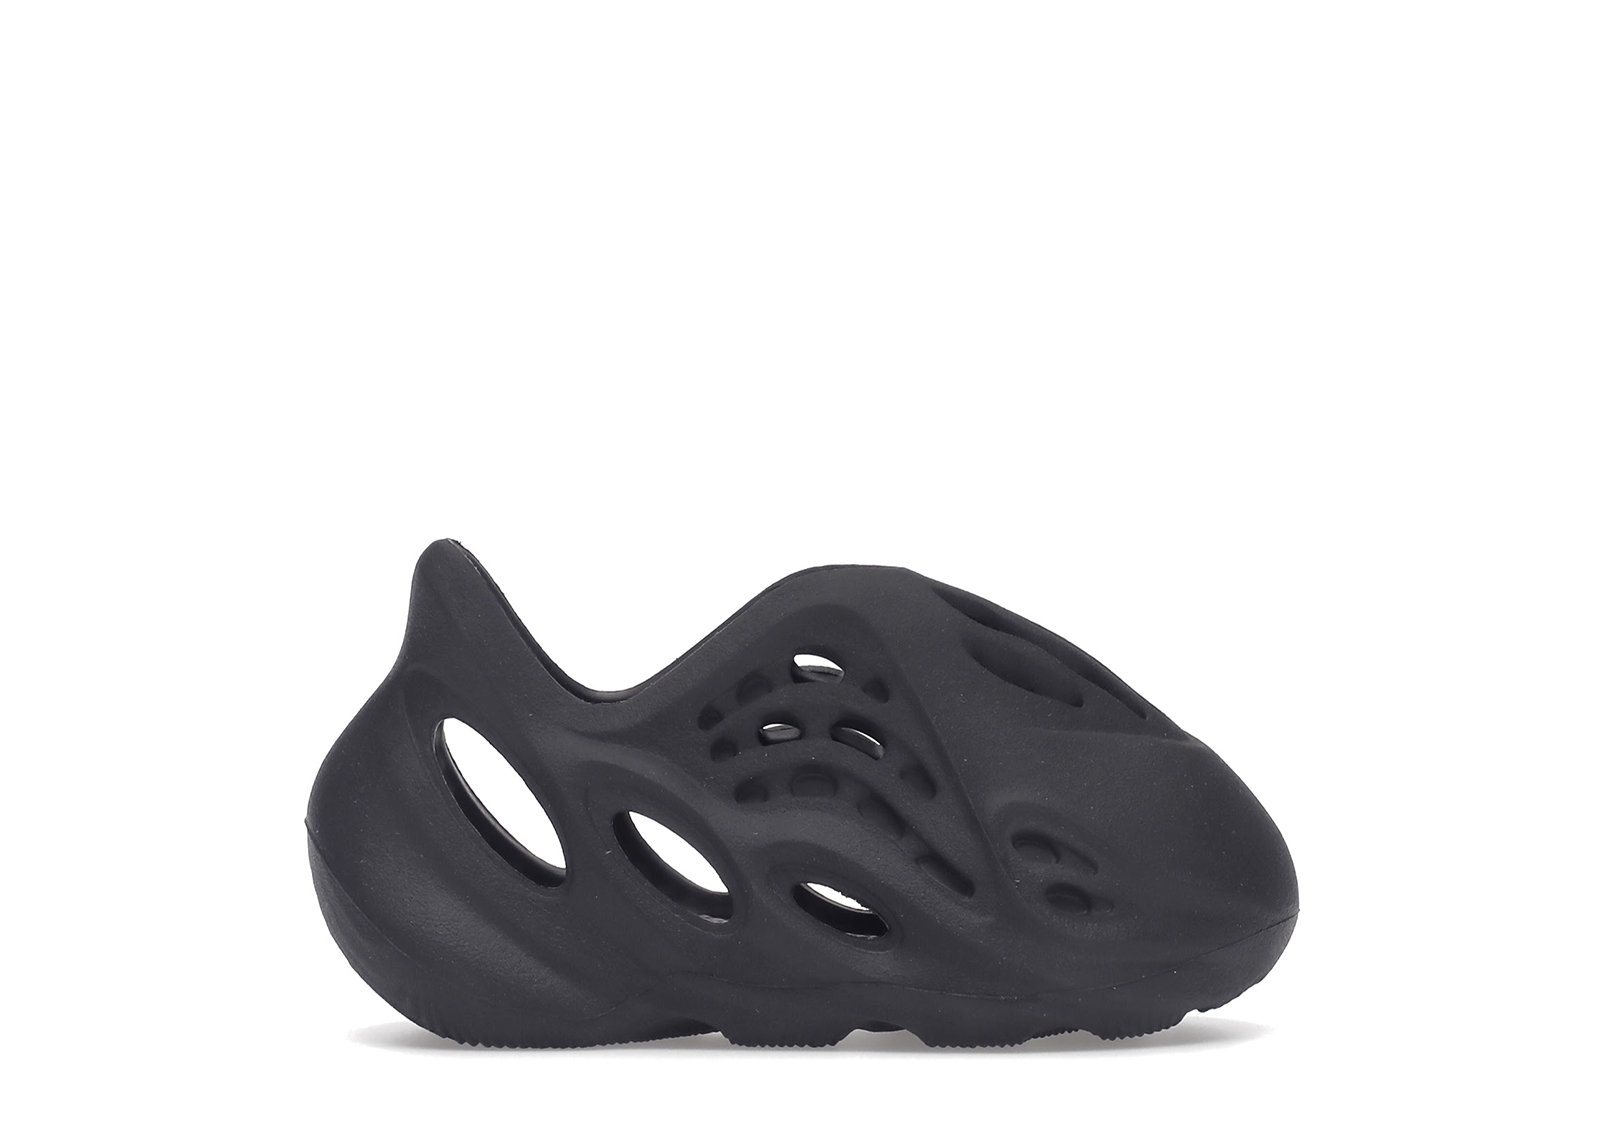 Yeezy Foam Runner Onyx (Infants) sneakers